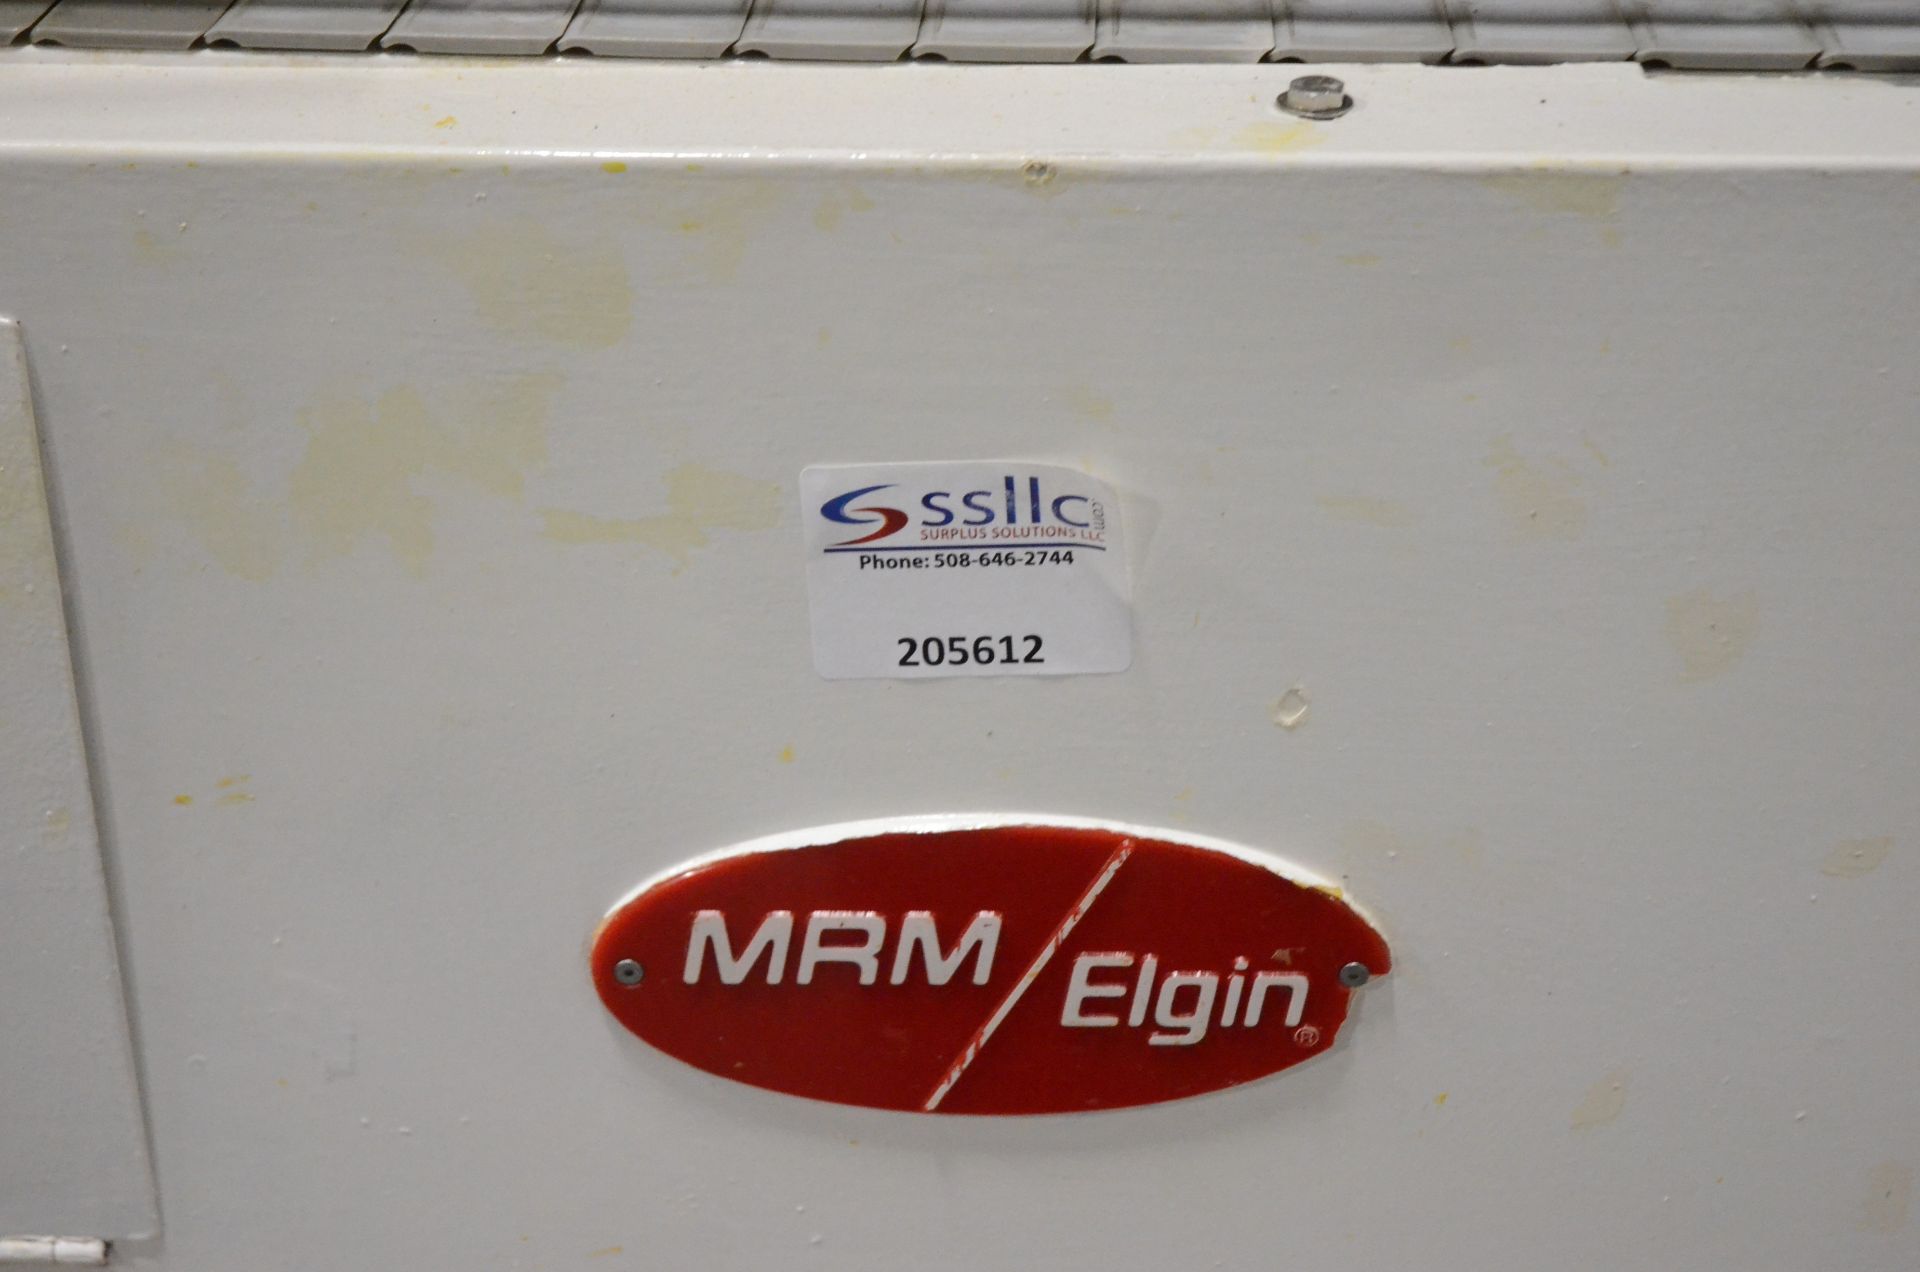 MRM / Elgin Creme Filling Machine - Image 2 of 14